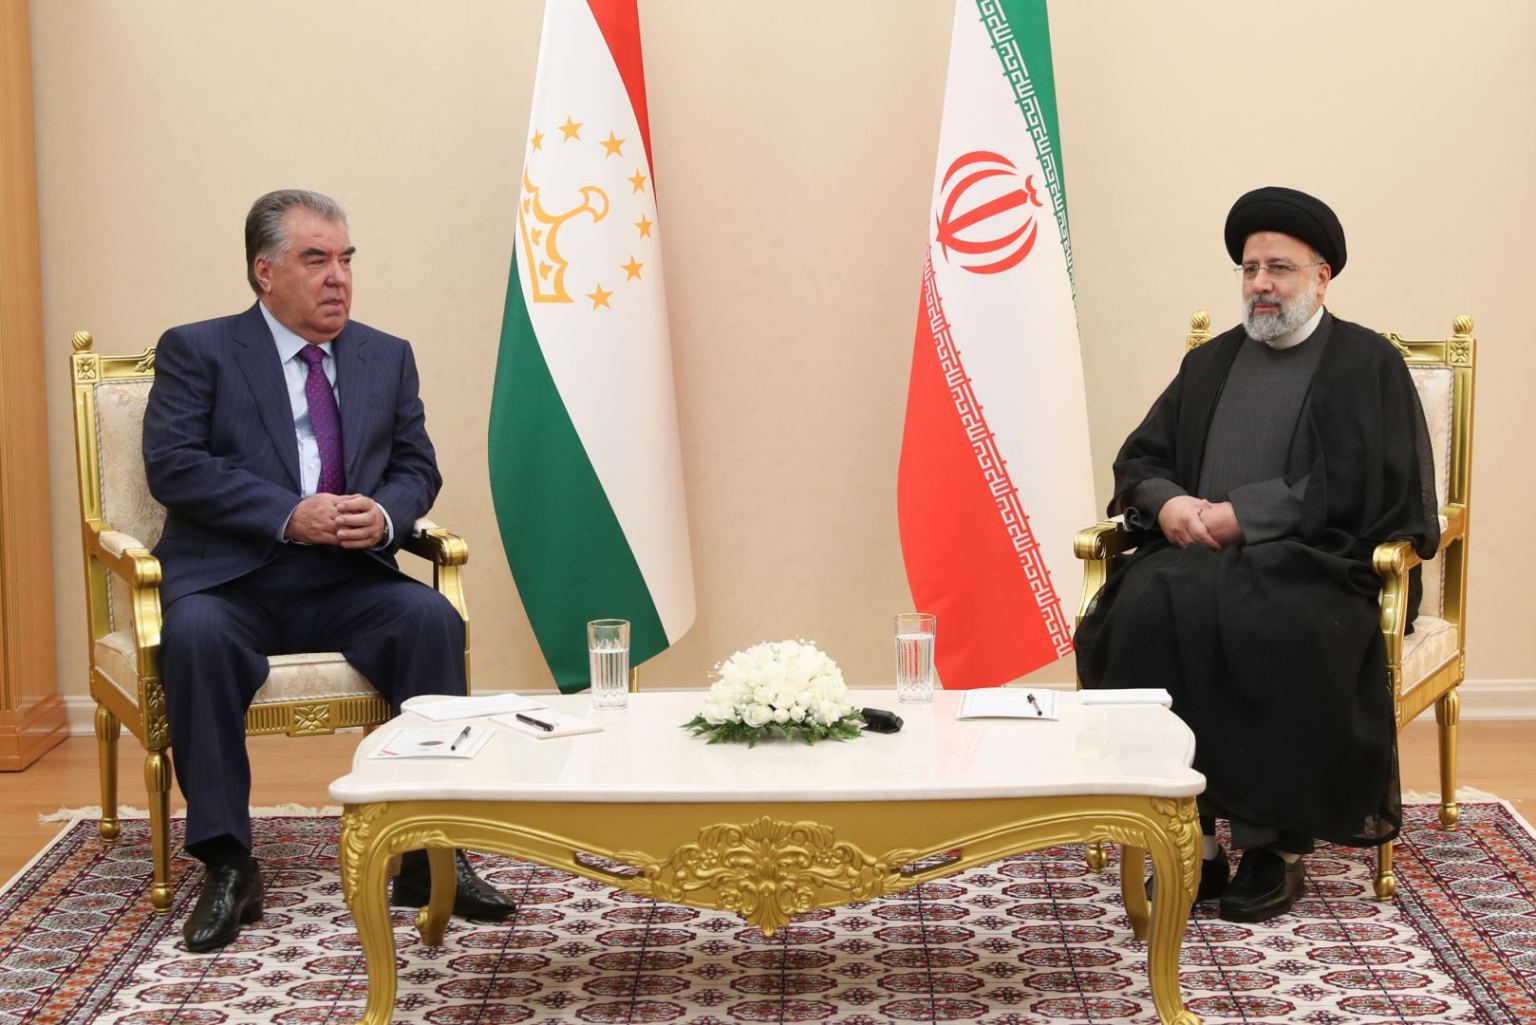 L’ Asia centrale “persiana”: la relazione speciale Iran-Tagikistan